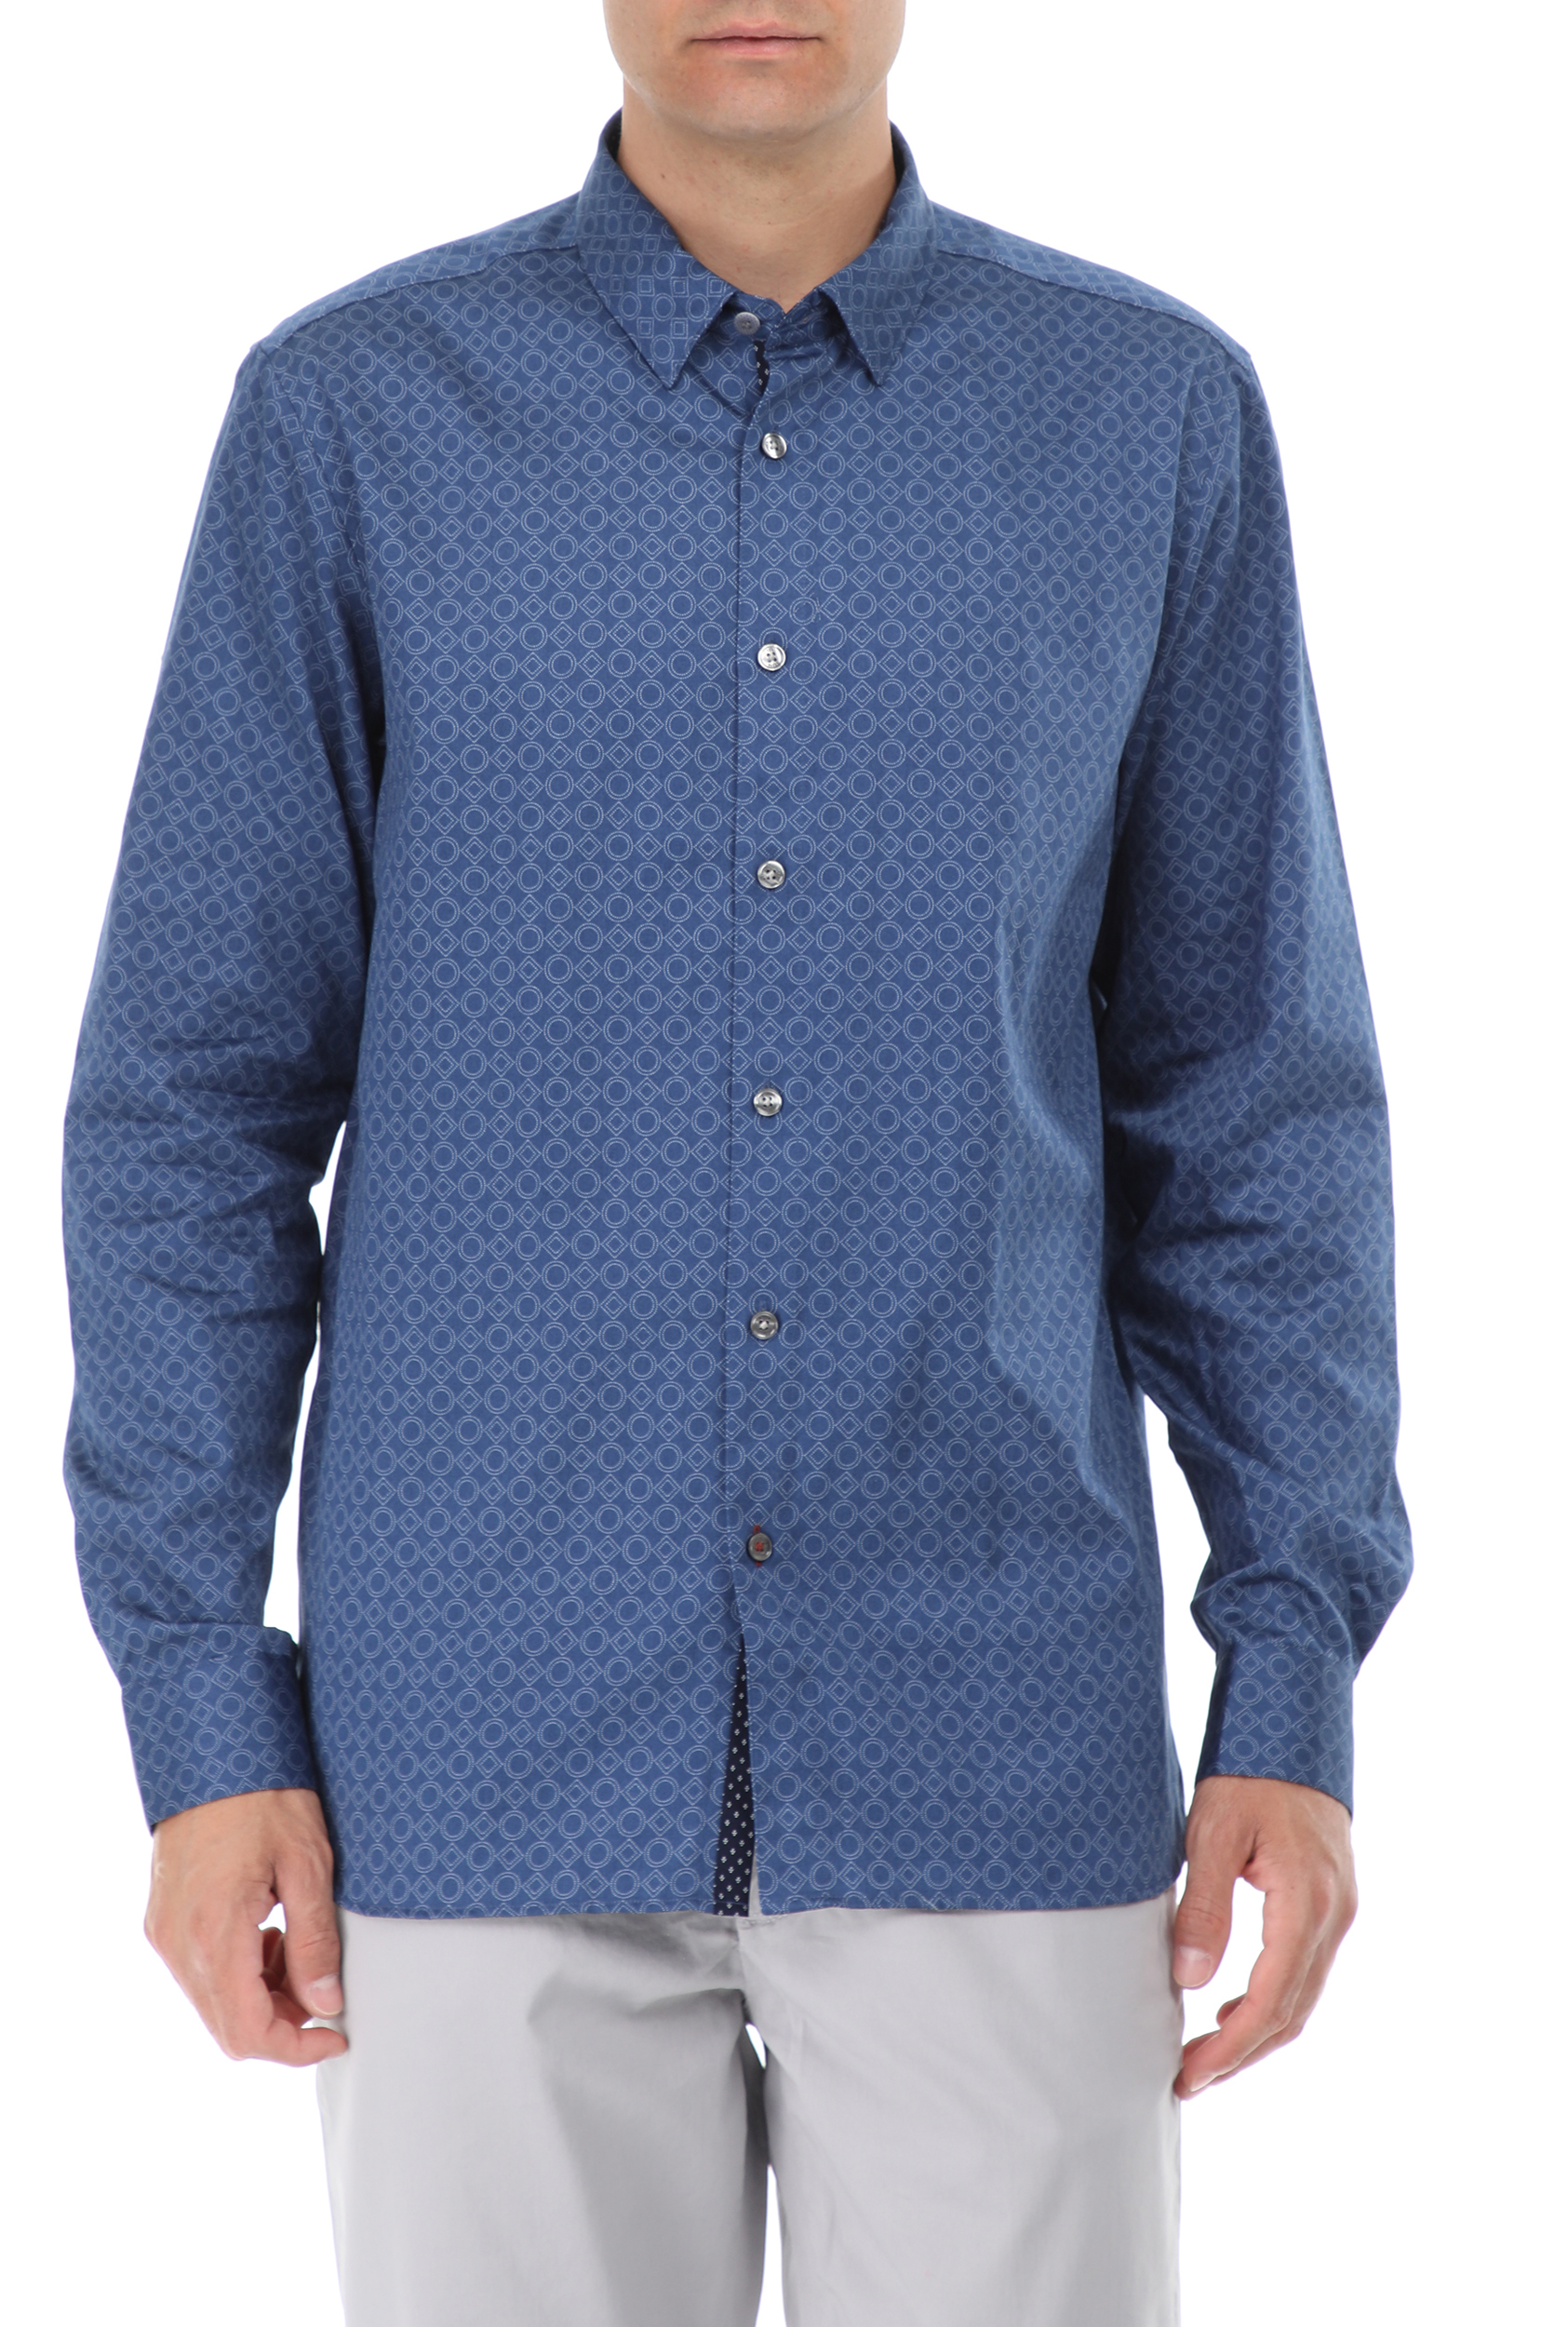 Ανδρικά/Ρούχα/Πουκάμισα/Μακρυμάνικα TED BAKER - Ανδρικό πουκάμισο TED BAKER WHONOS μπλε